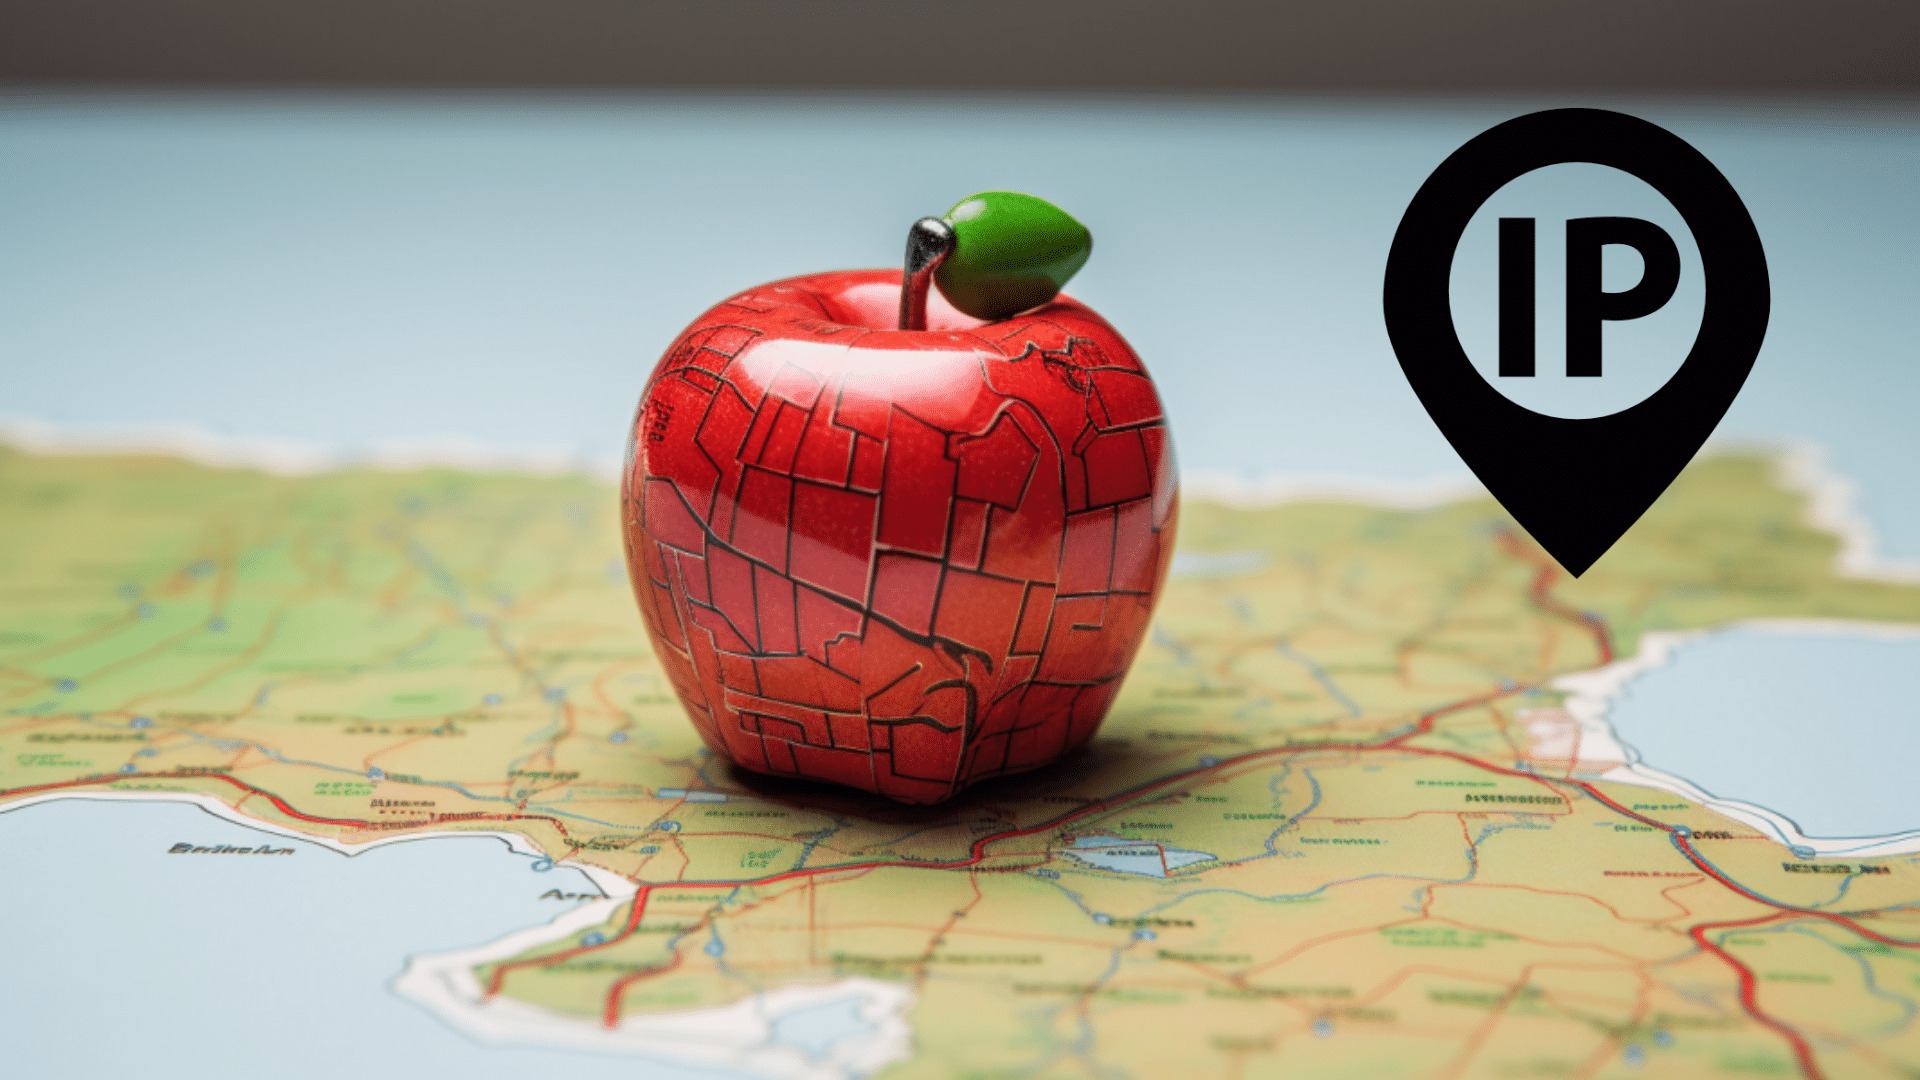 Manzana sobre un mapa con simbolo de ip